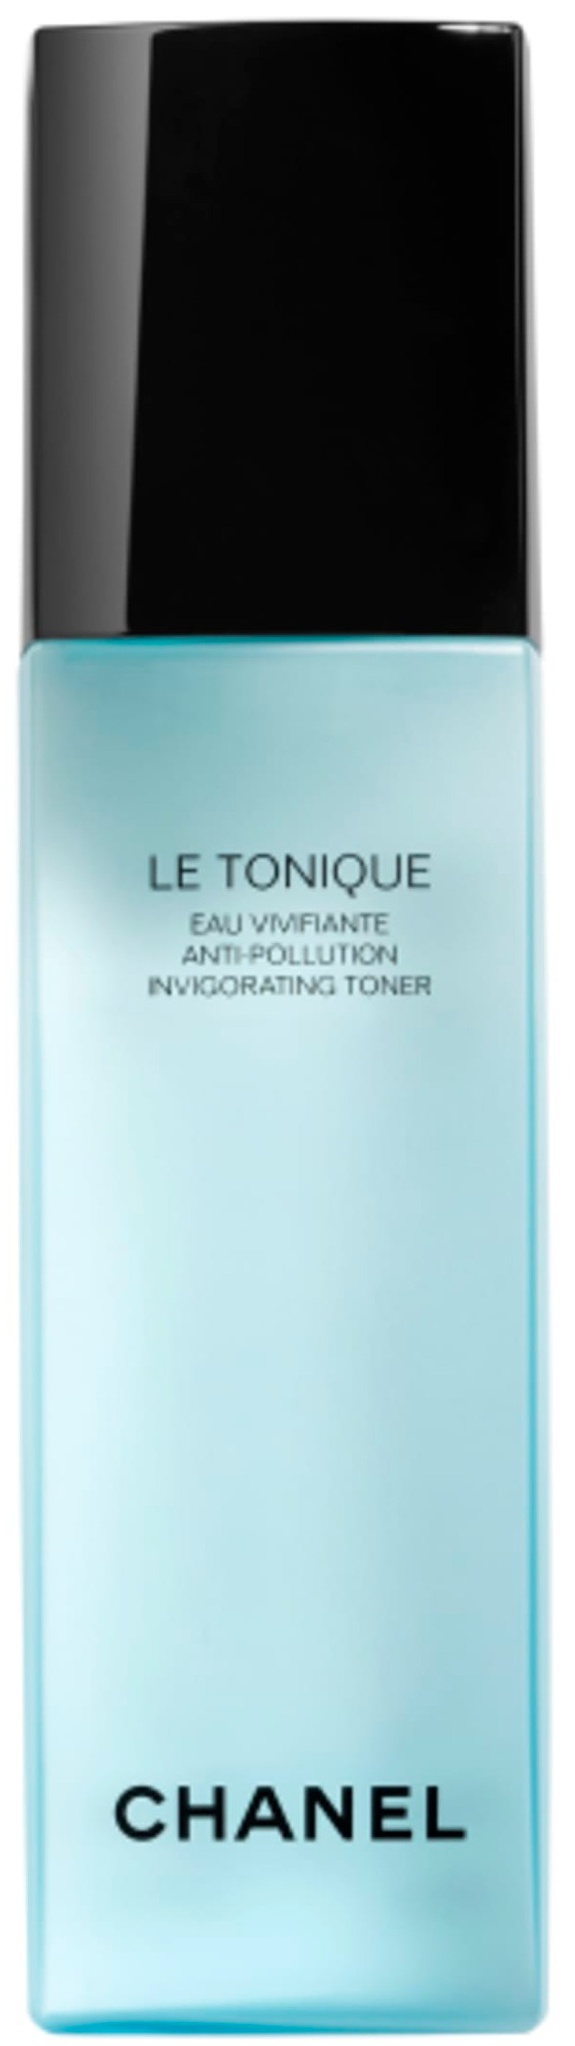 Chanel Le Tonique Anti-pollution Invigorating Toner